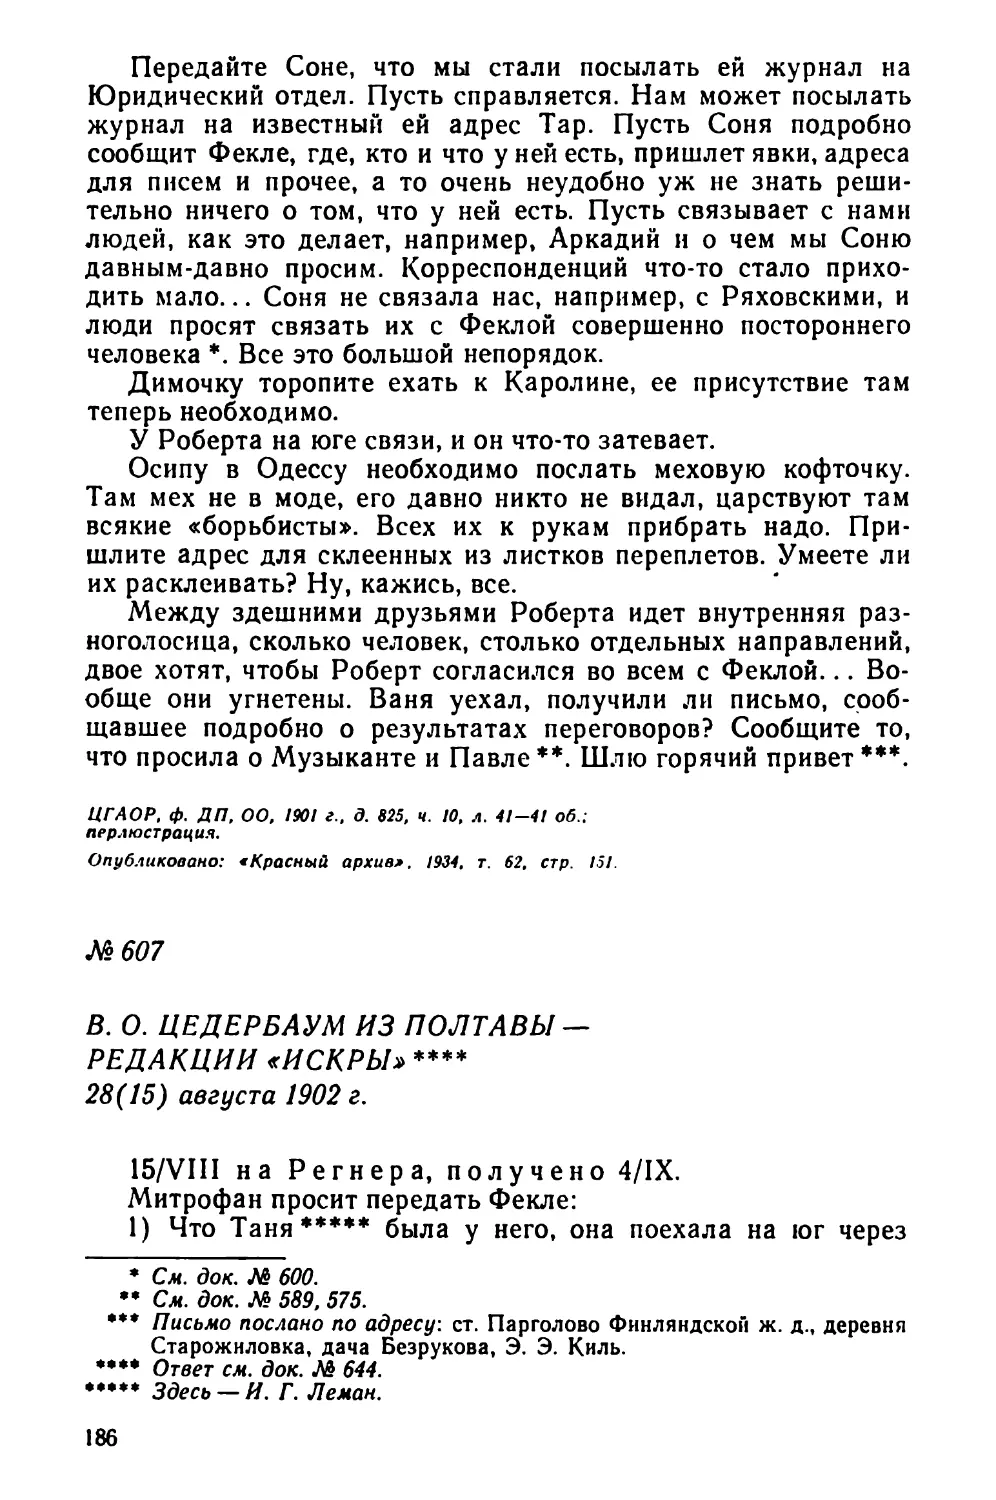 № 607 В. О. Цедербаум из Полтавы — редакции «Искры». 28 августа